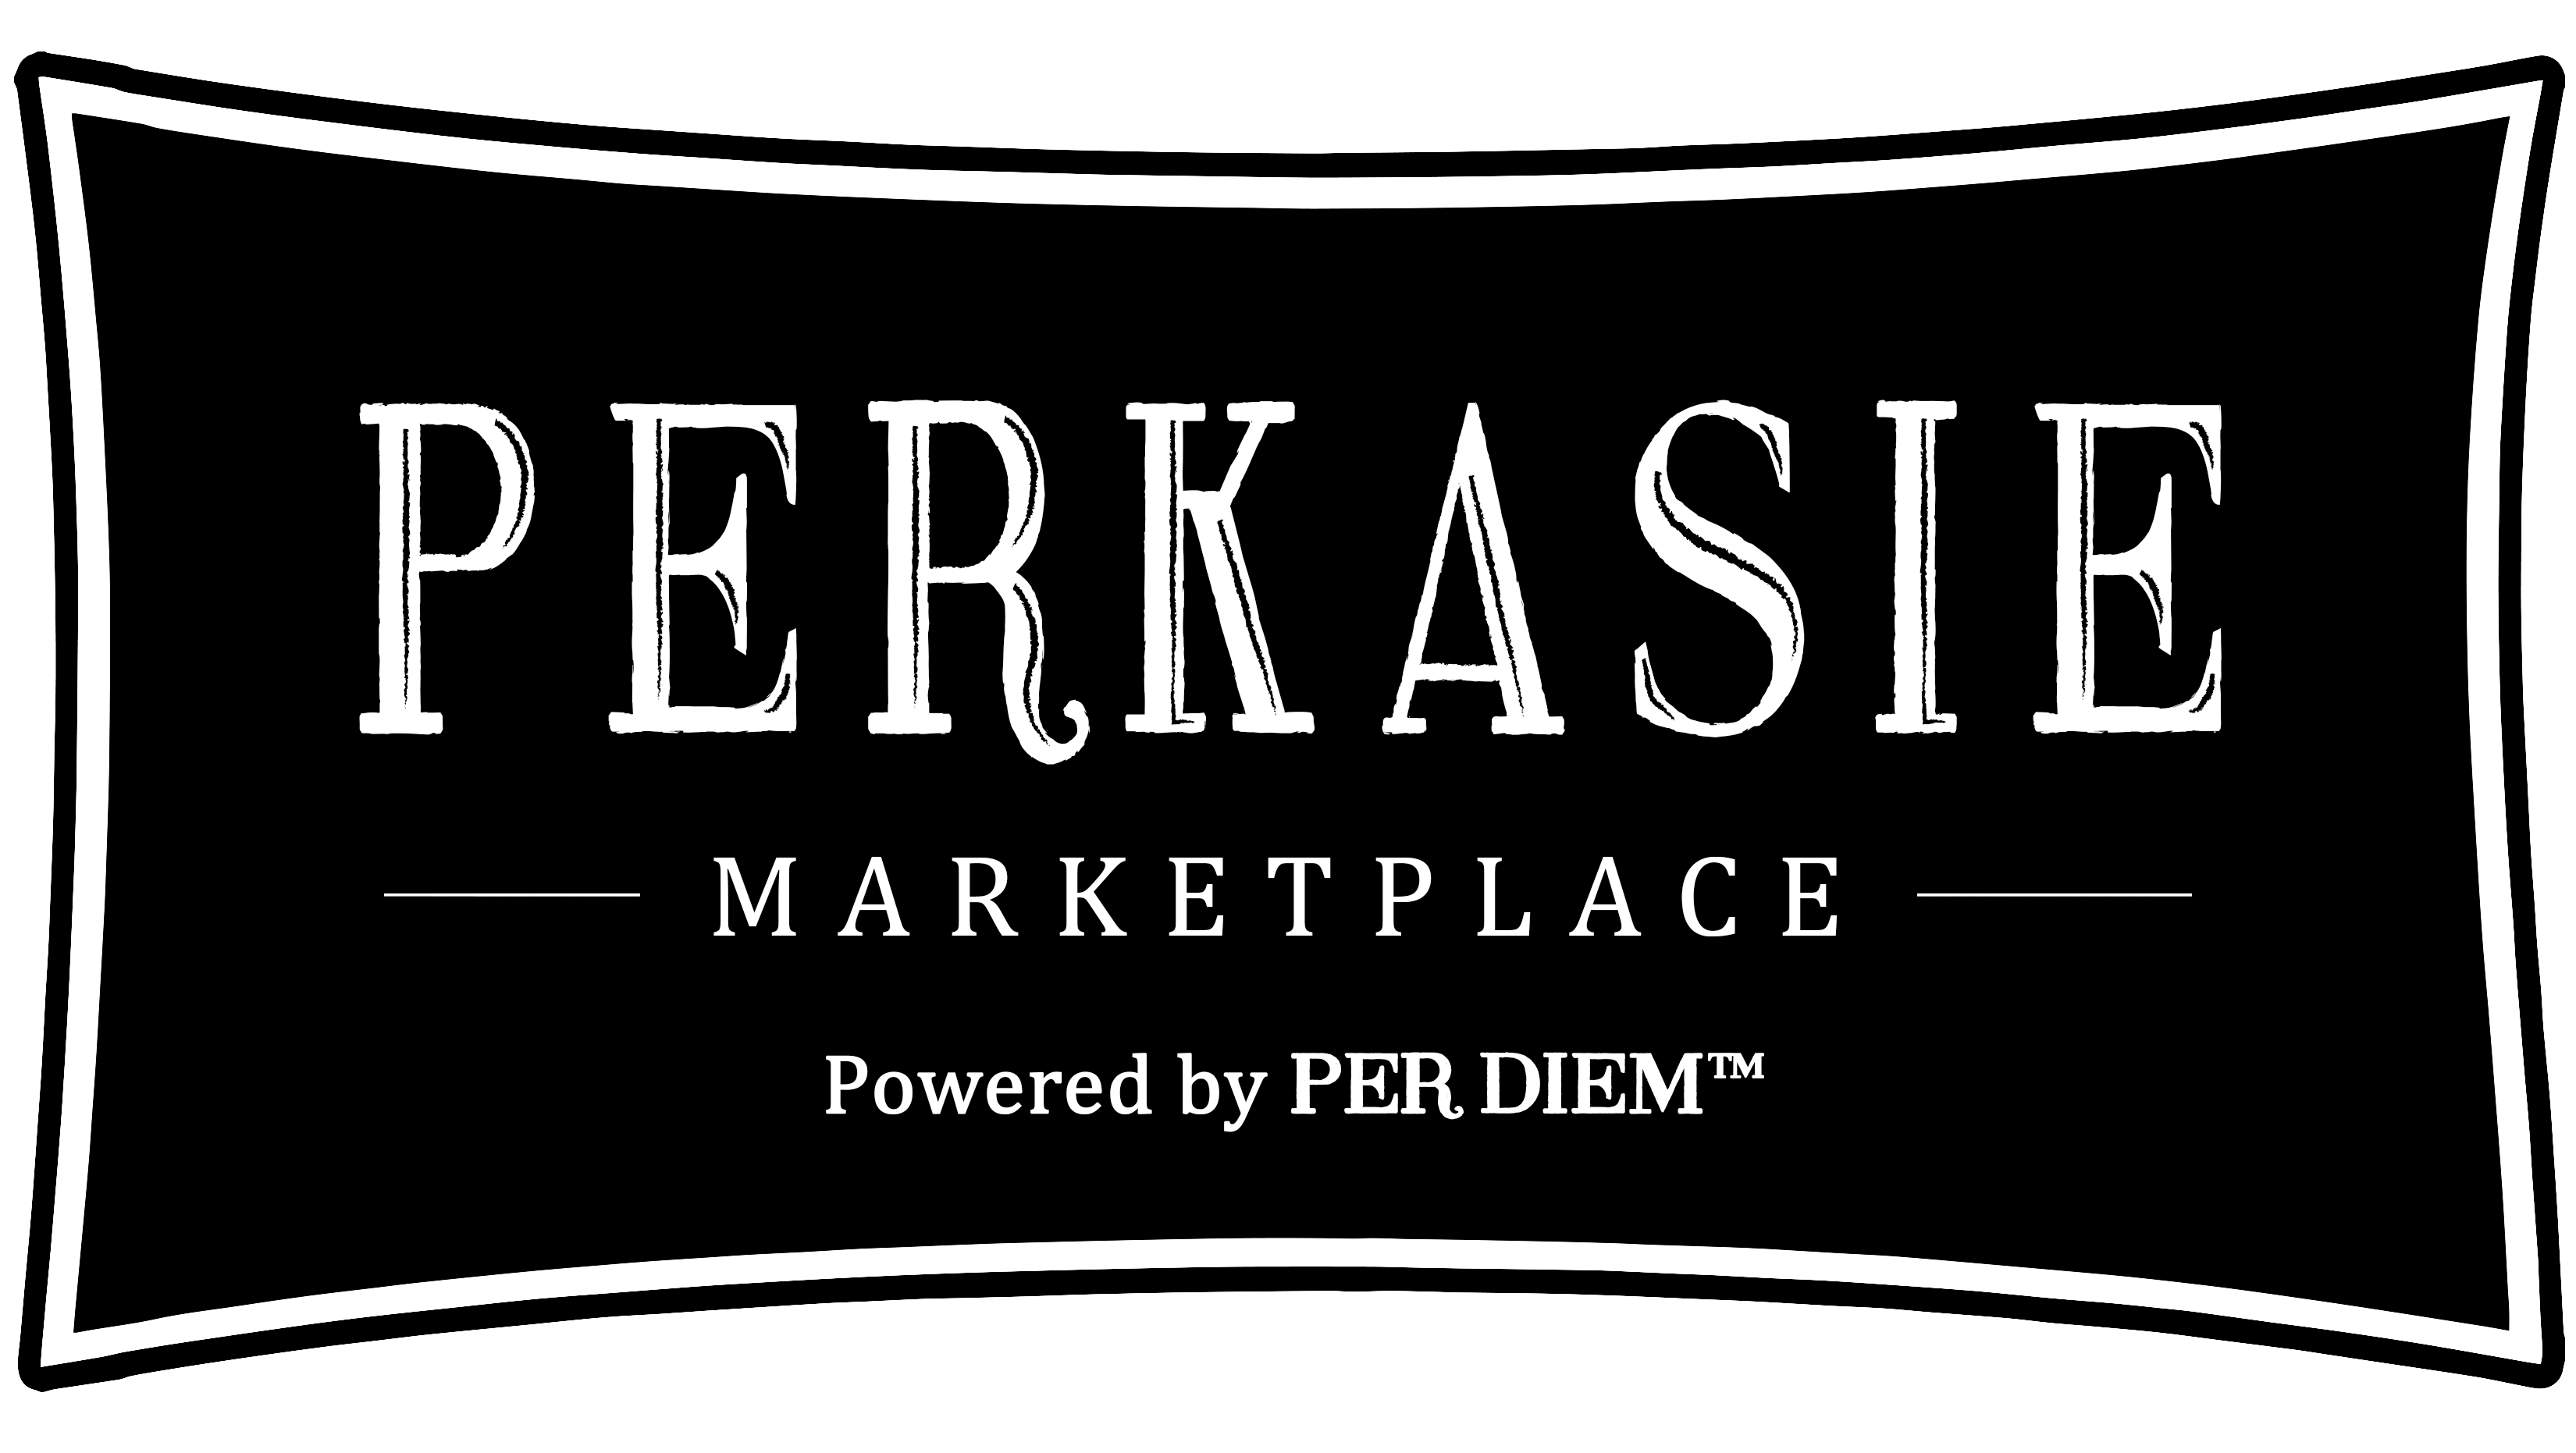 Perkasie Marketplace